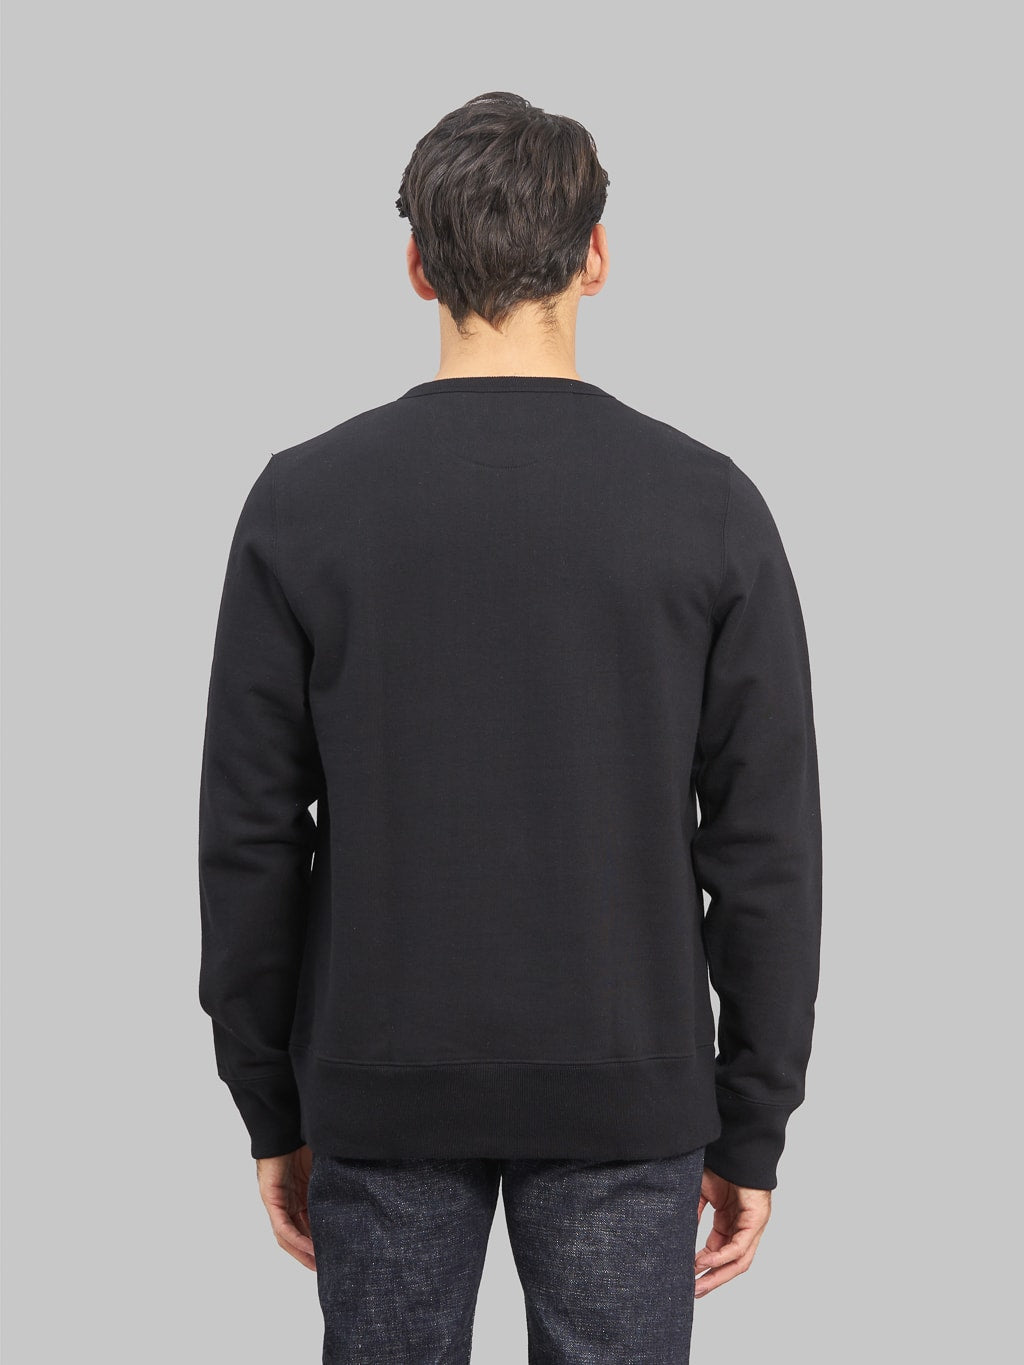 Merz b schwanen loopwheeled sweatshirt heavy black model back fit